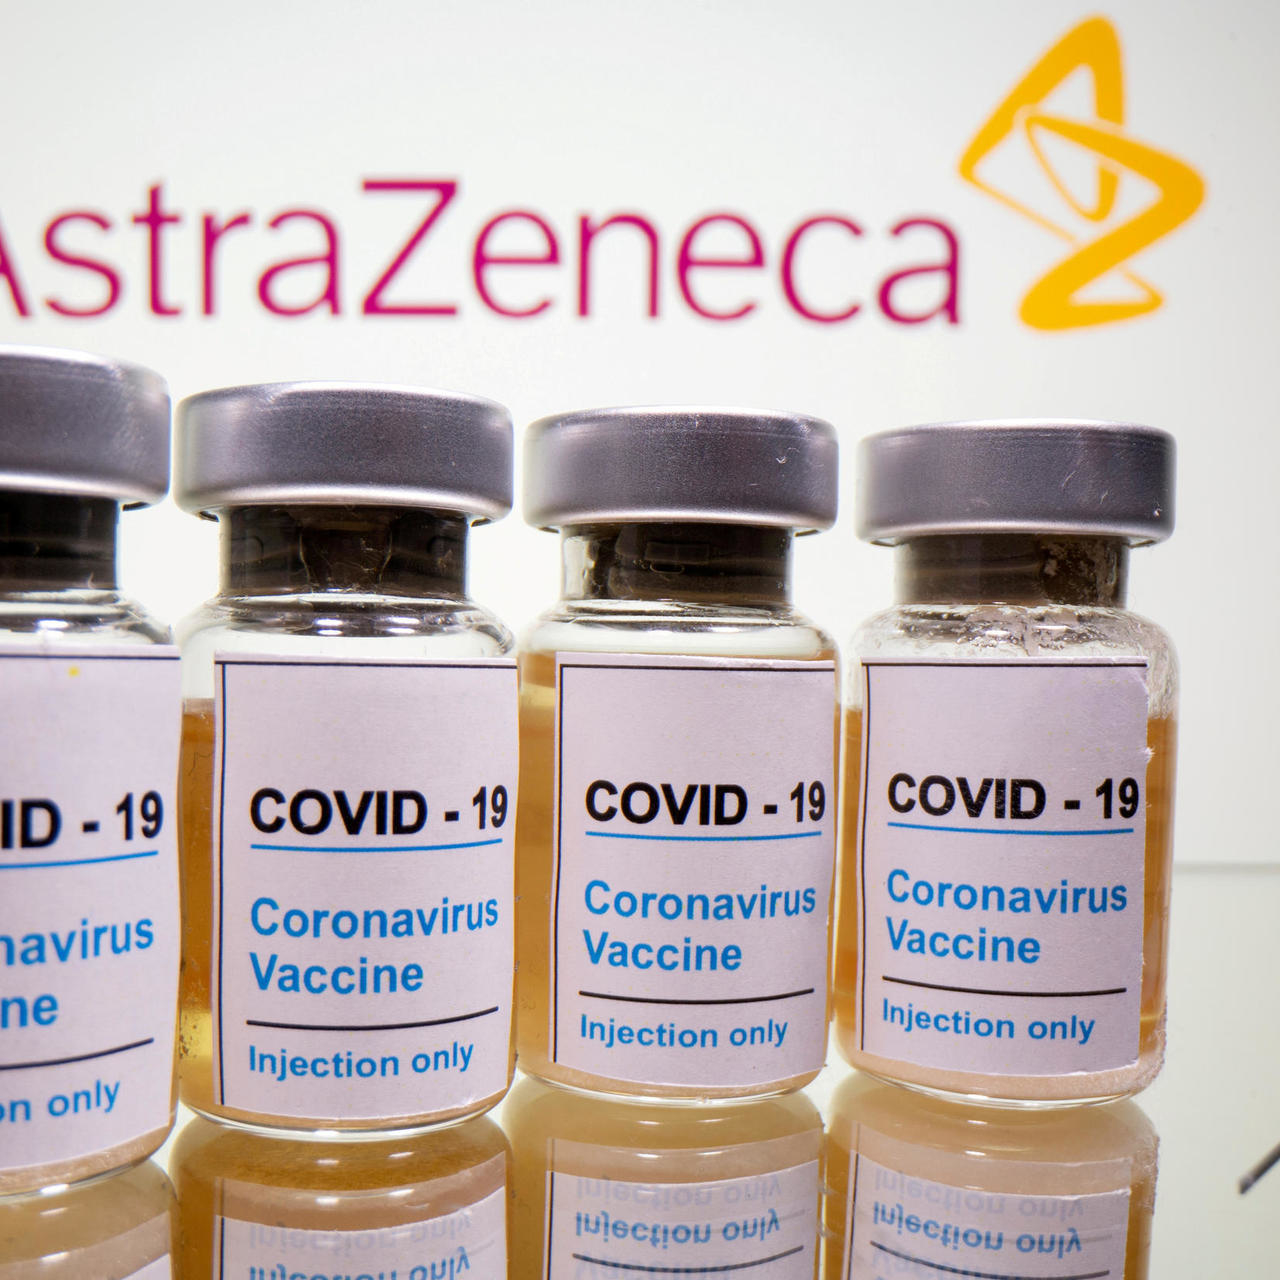 Covid-19 : Le vaccin d'Astrazeneca suscite de l'inquiétudeEn France